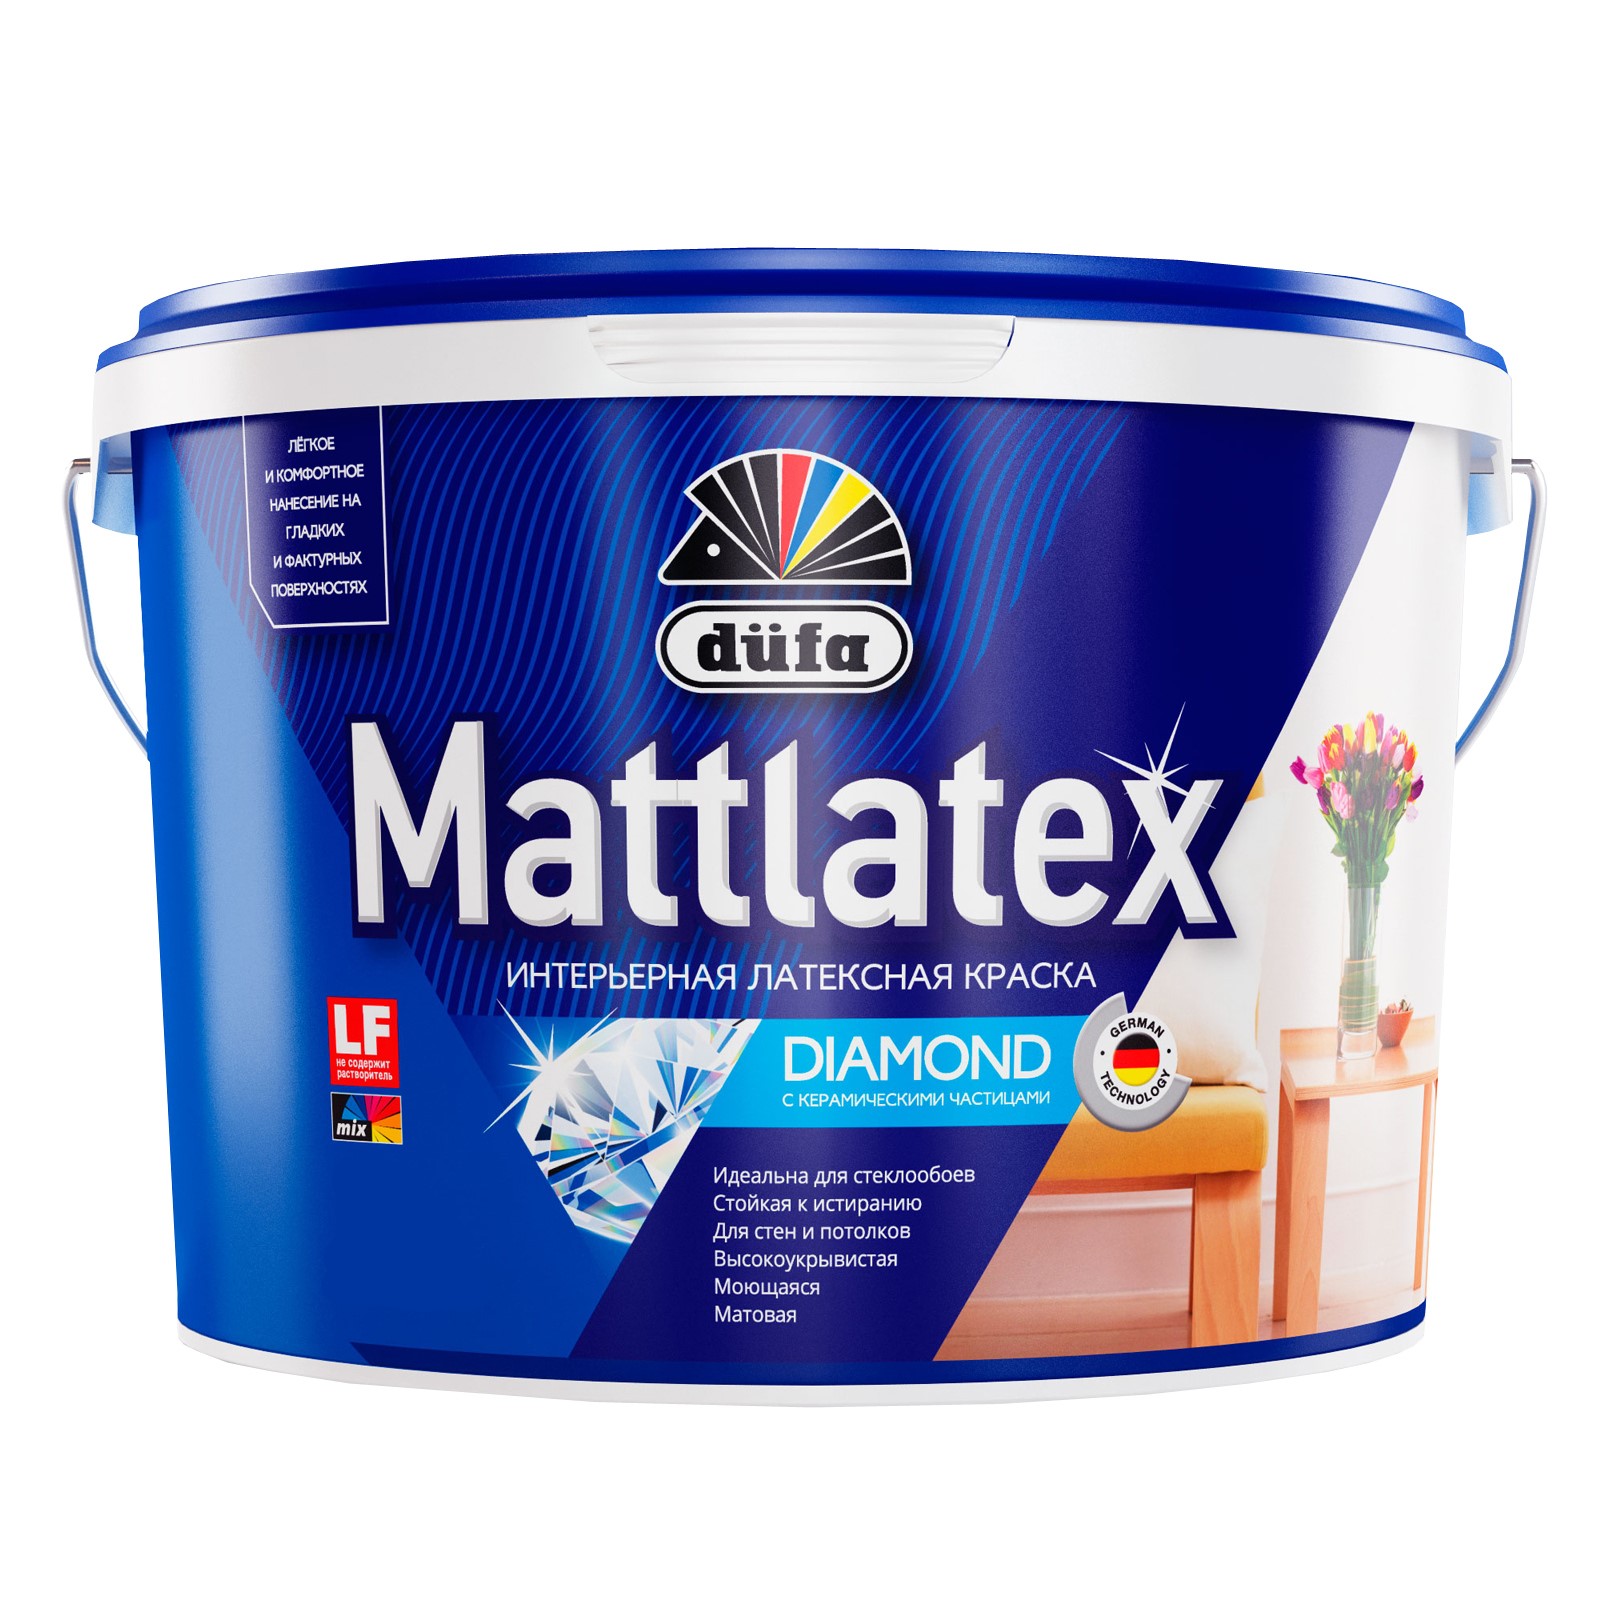 Краска Dufa Mattlatex RD100 водно-дисперсионная, база 3, 900 мл водно дисперсионная краска для потолков лакра